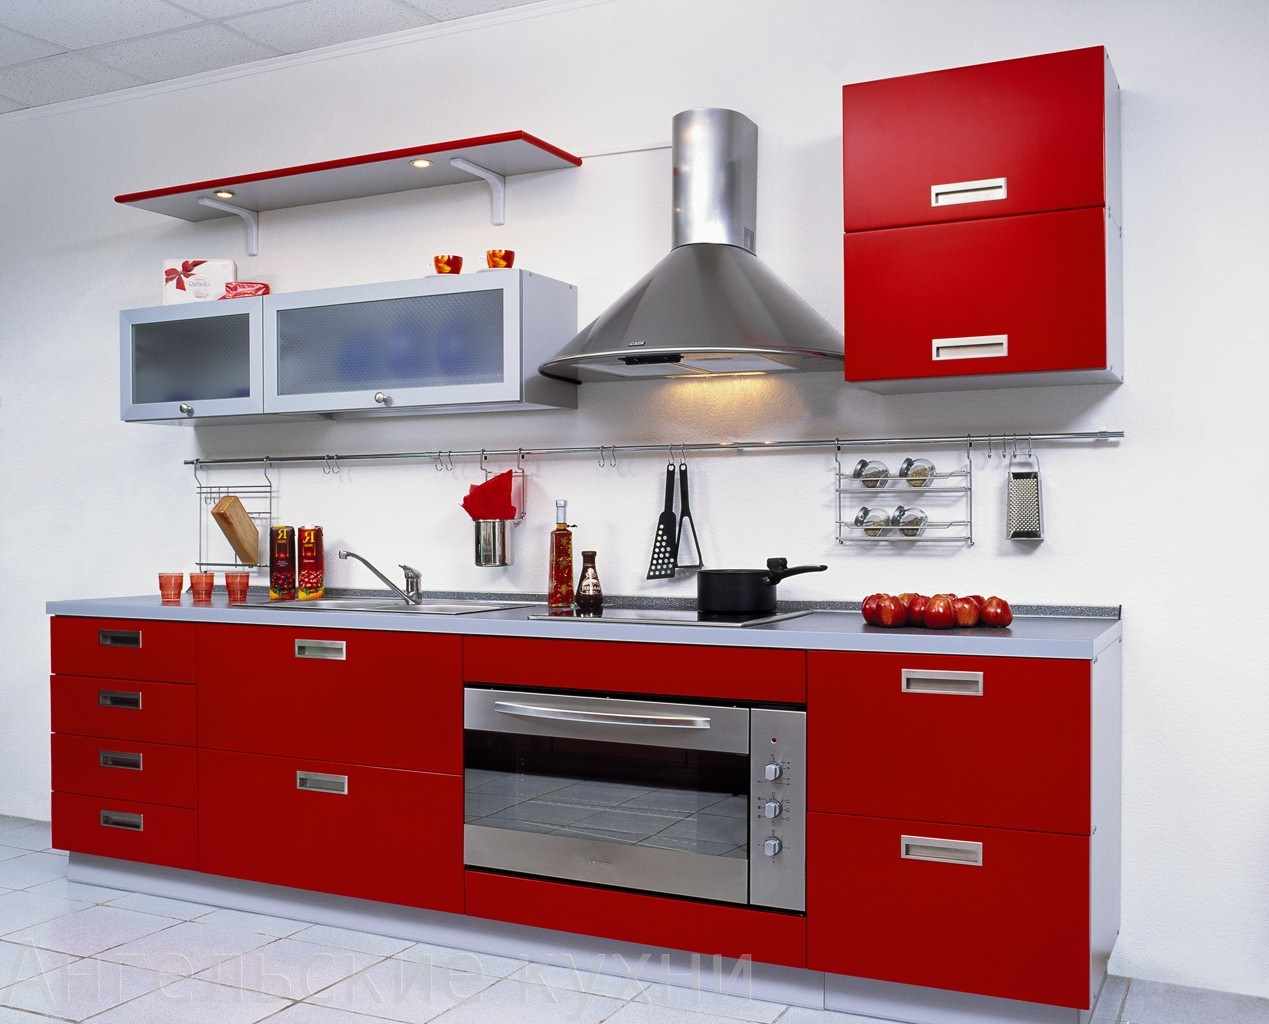 ein beispiel für ein ungewöhnliches design einer roten küche